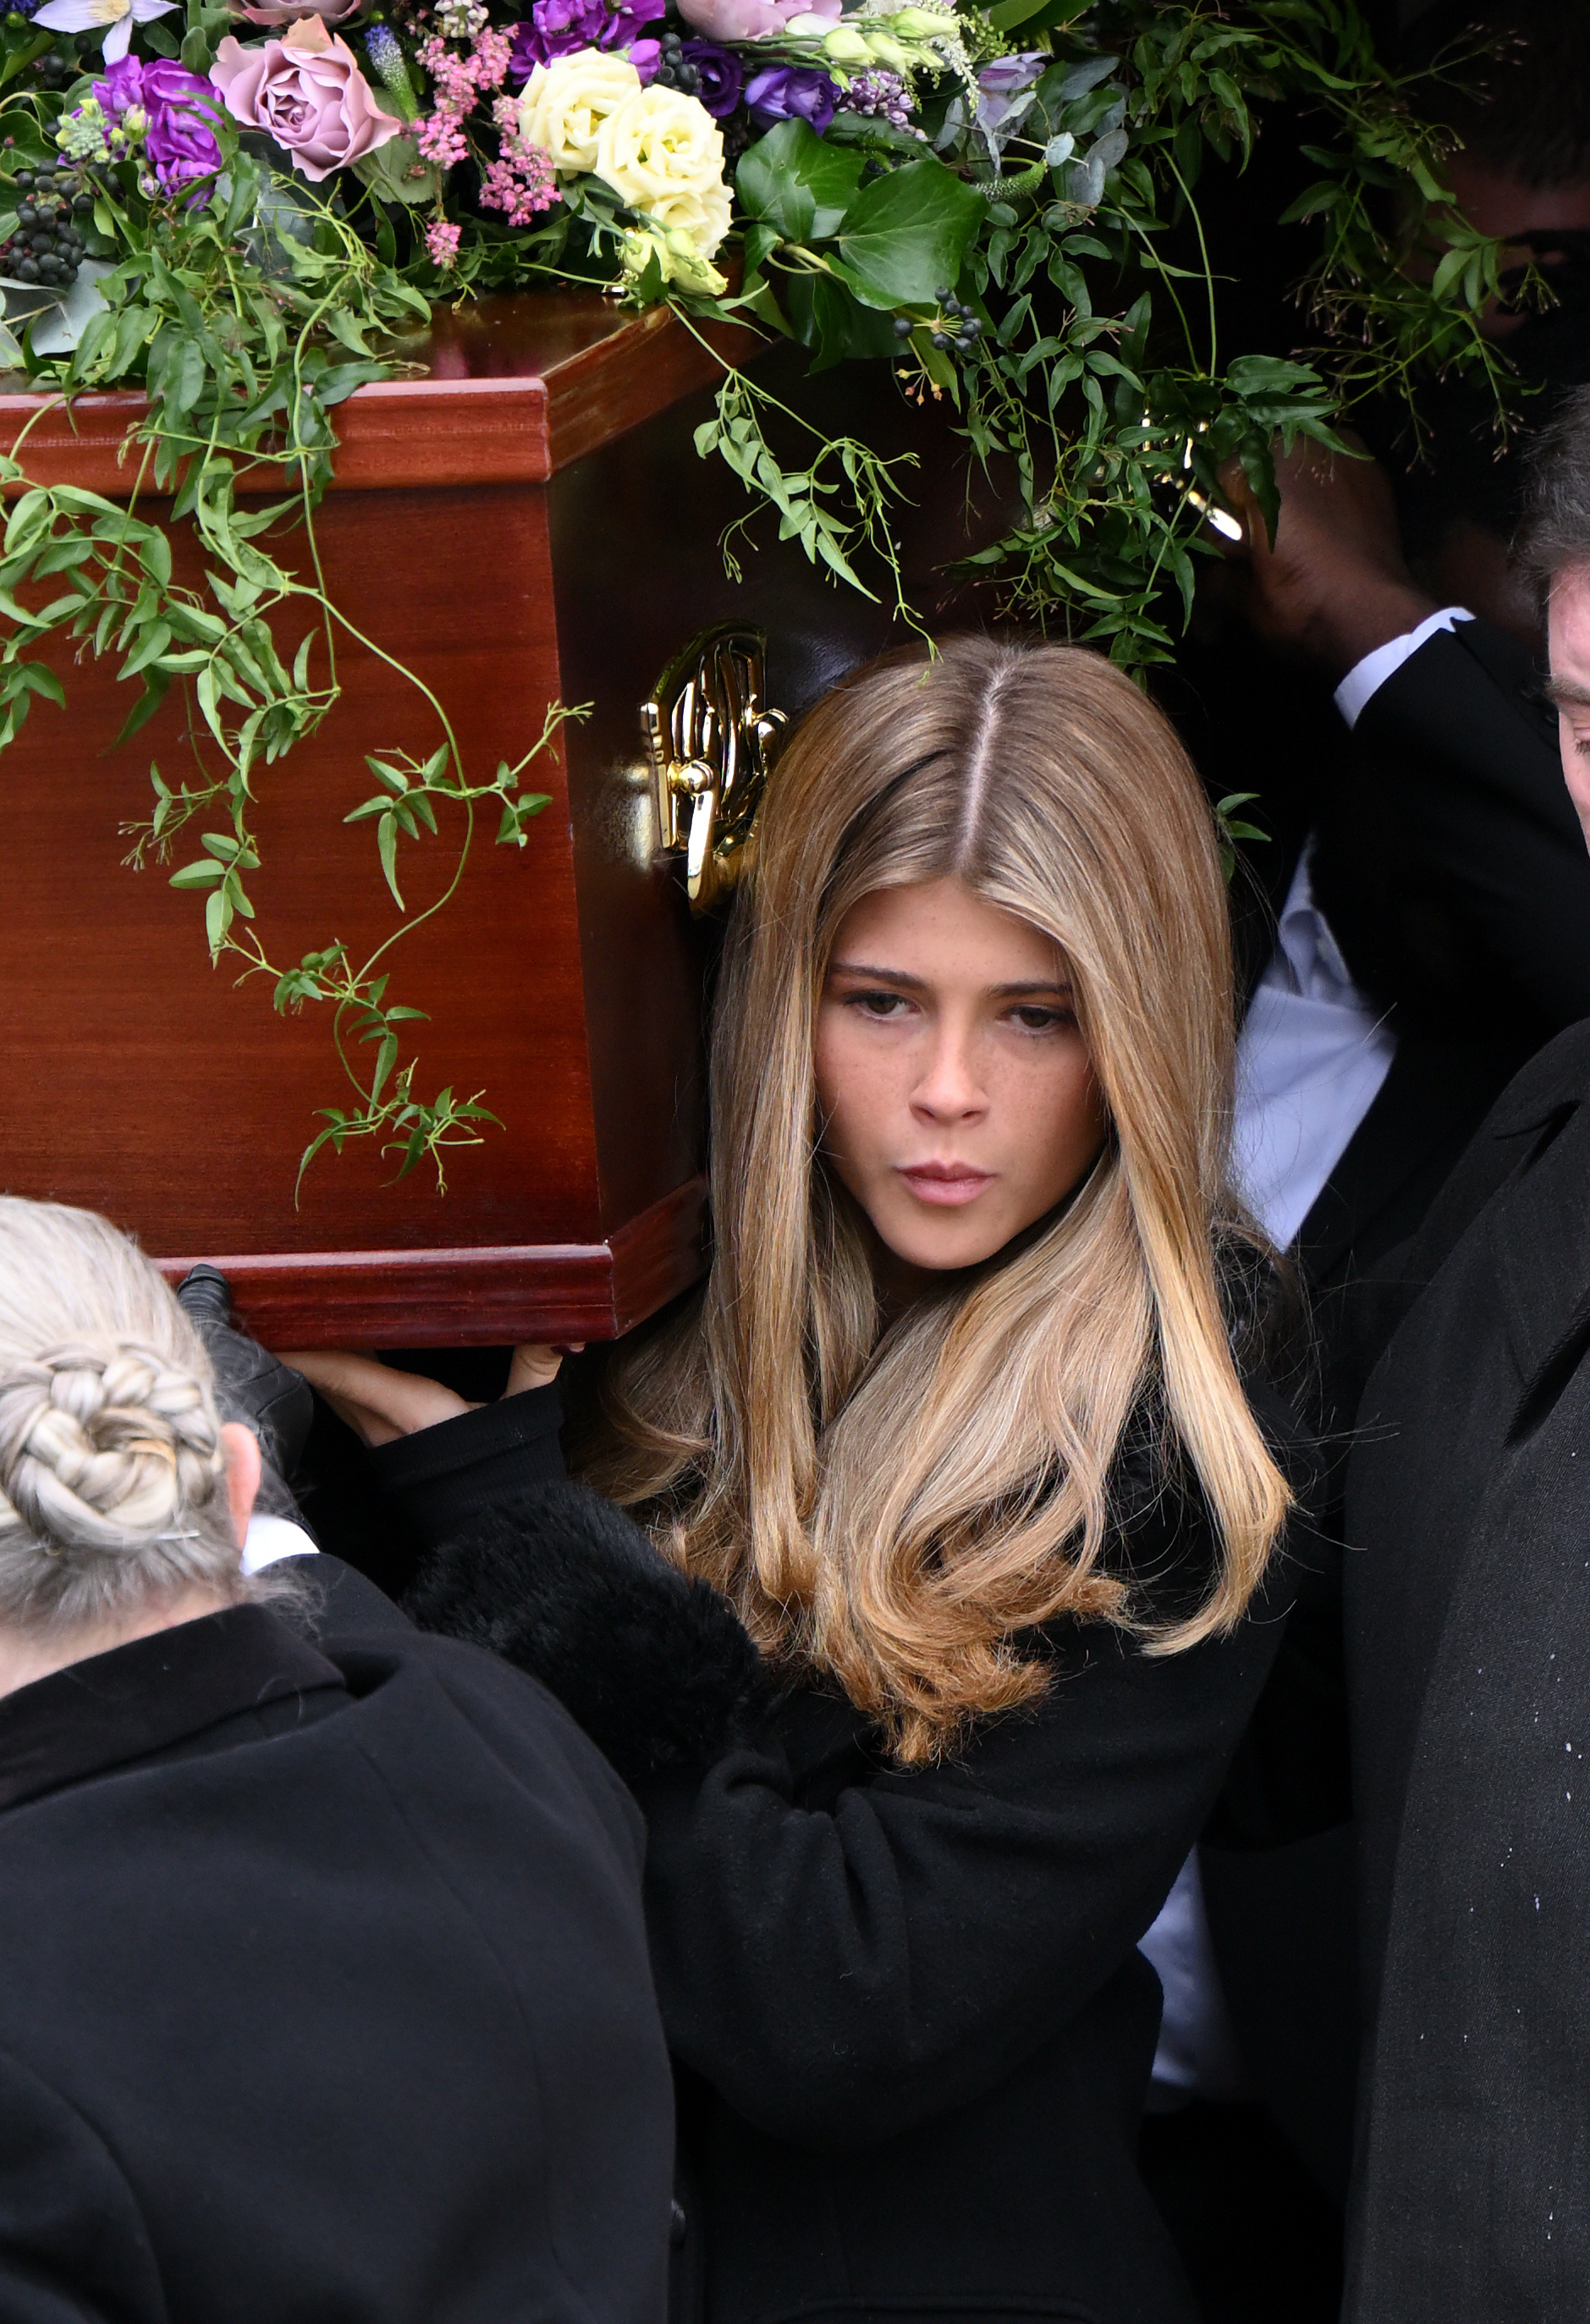 Die 17-jährige Darcey trug den Sarg ihres Vaters bei dessen Beerdigung am Freitag, an der zahlreiche Promis aus Musik, Film und Politik teilnahmen